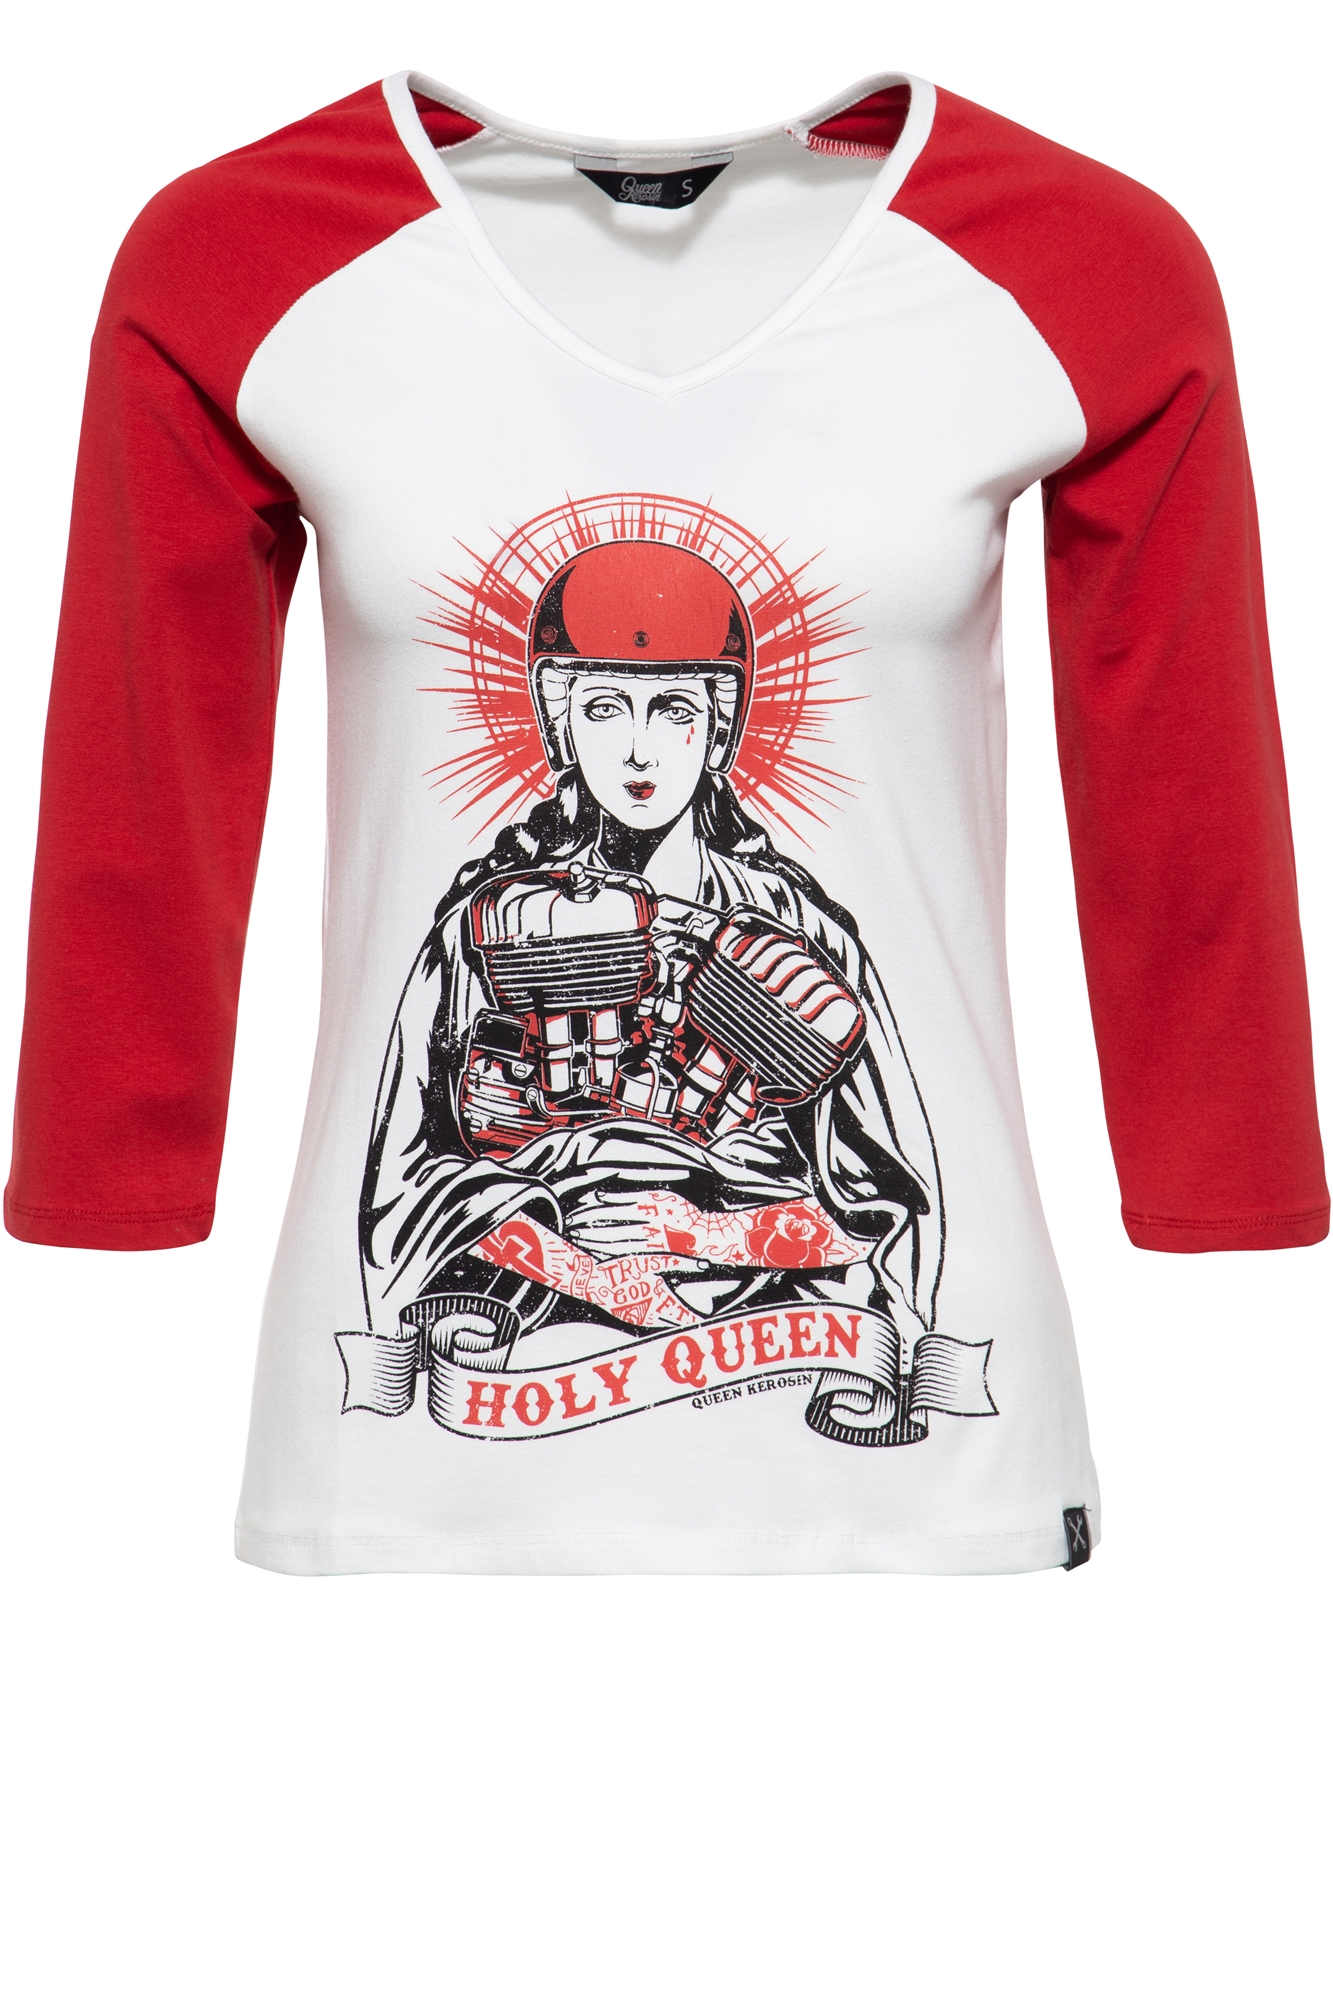 Queen Kerosin 3/4-Sleeve Shirt - Holy Queen M